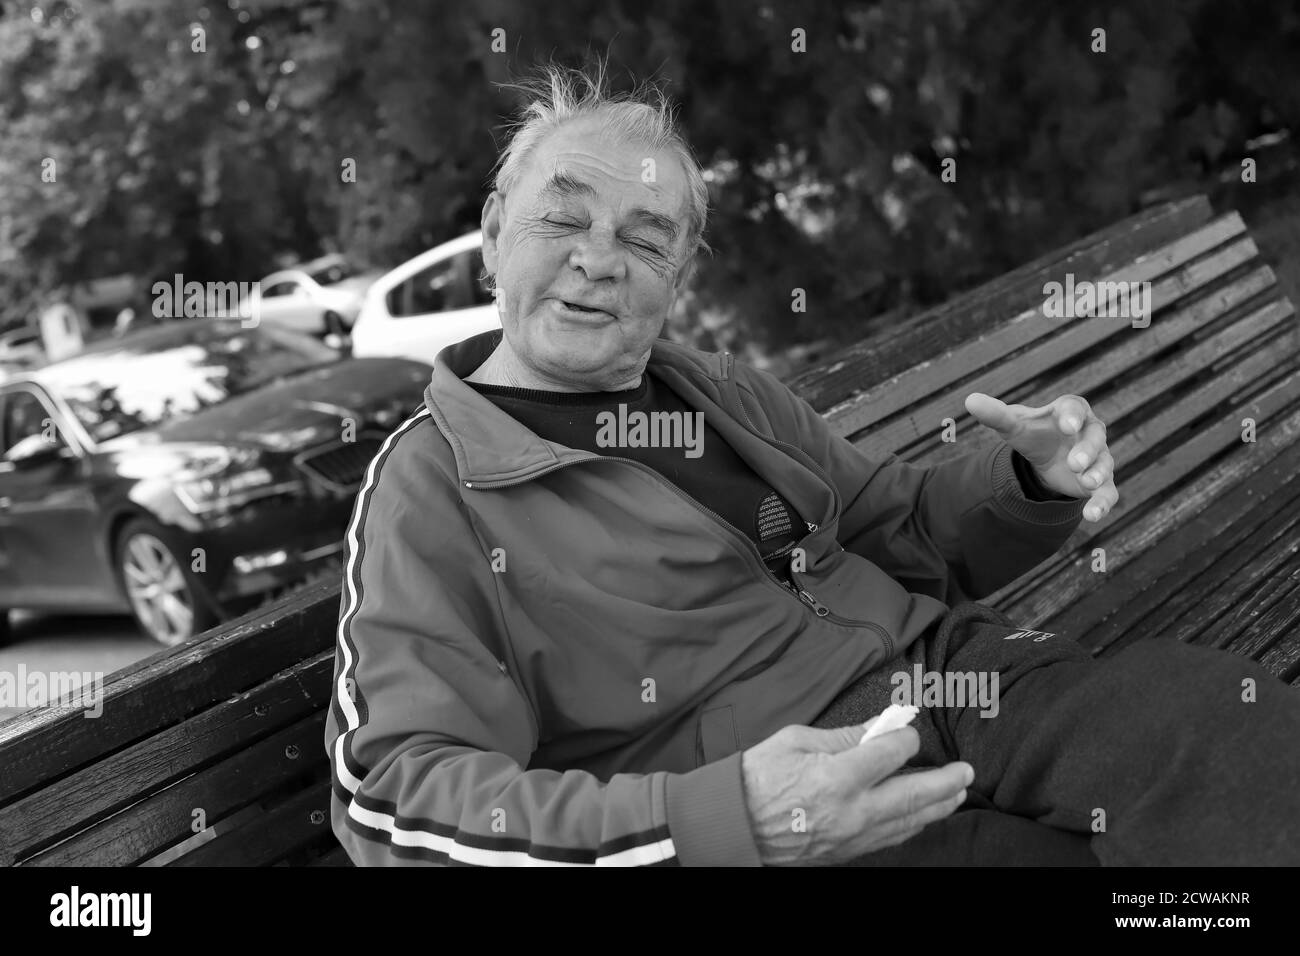 Belgrade, Serbie, 18 juin 2020 : Portrait d'un homme ivre assis sur un banc (N/B) Banque D'Images